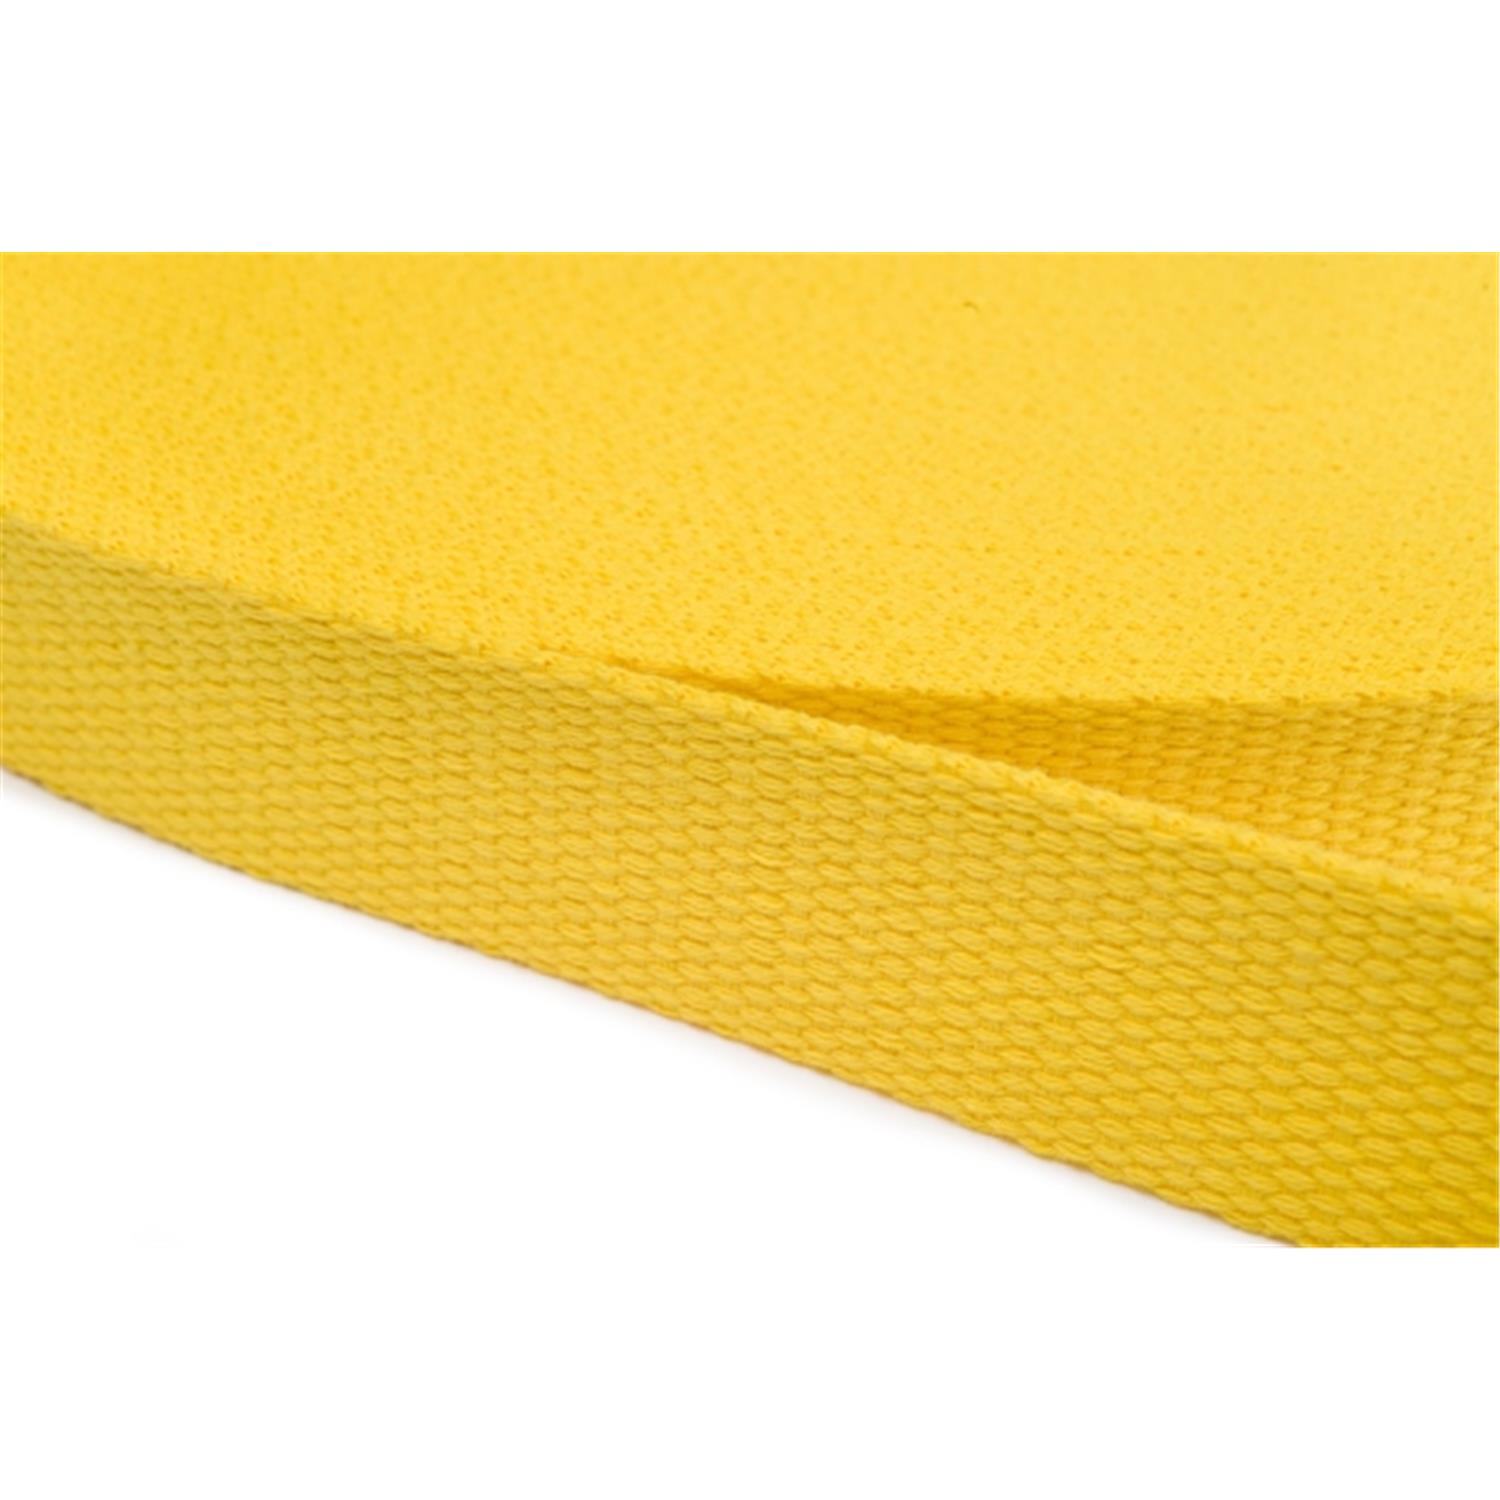 Gurtband aus Baumwolle 30mm in 20 Farben 05 - gelb 12 Meter